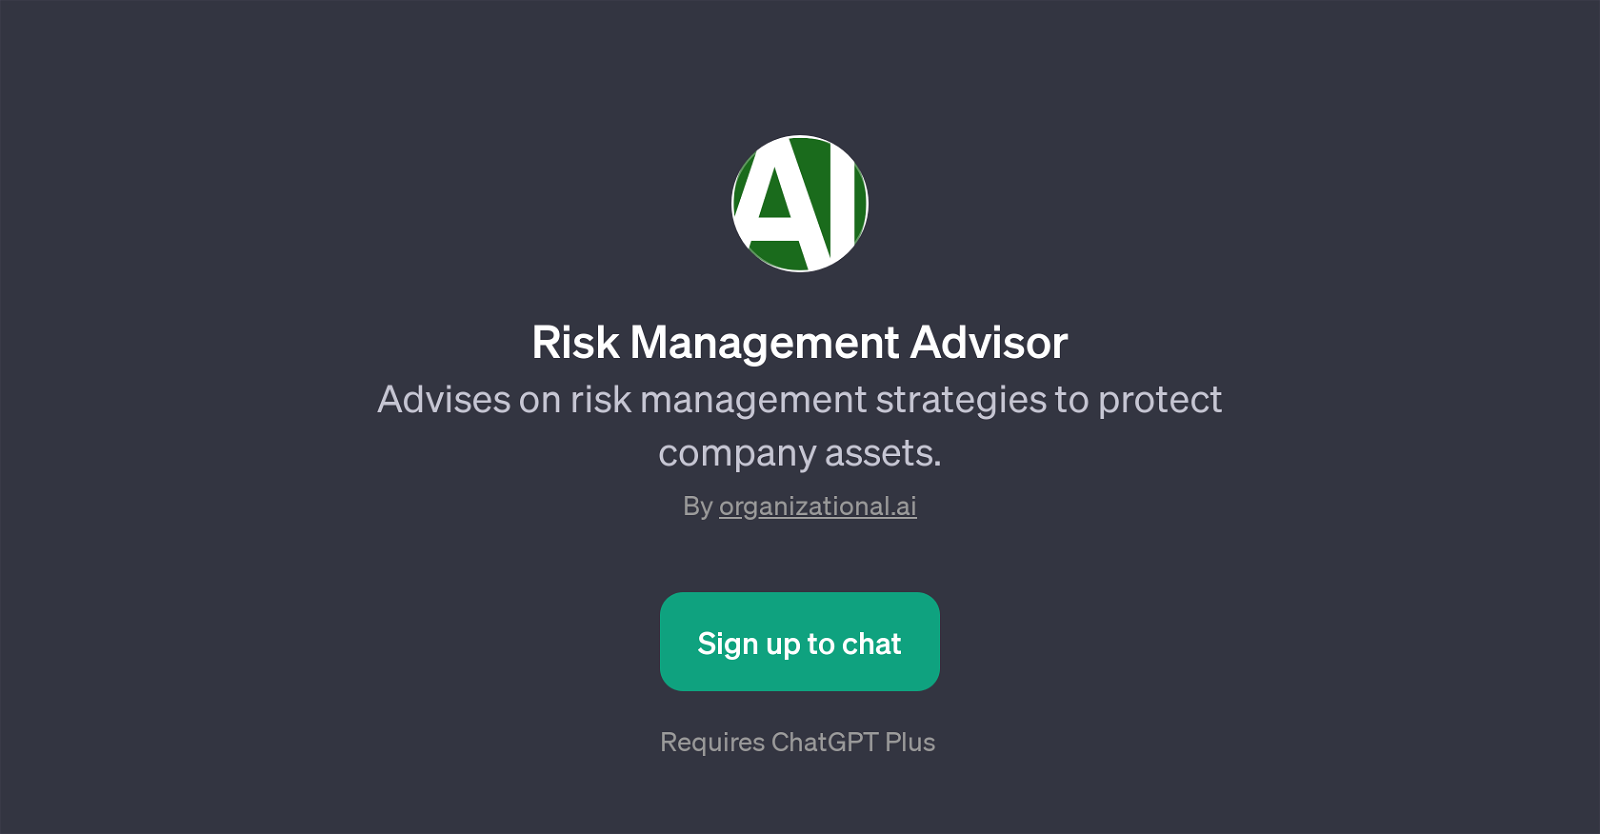 Risk Management Advisor website